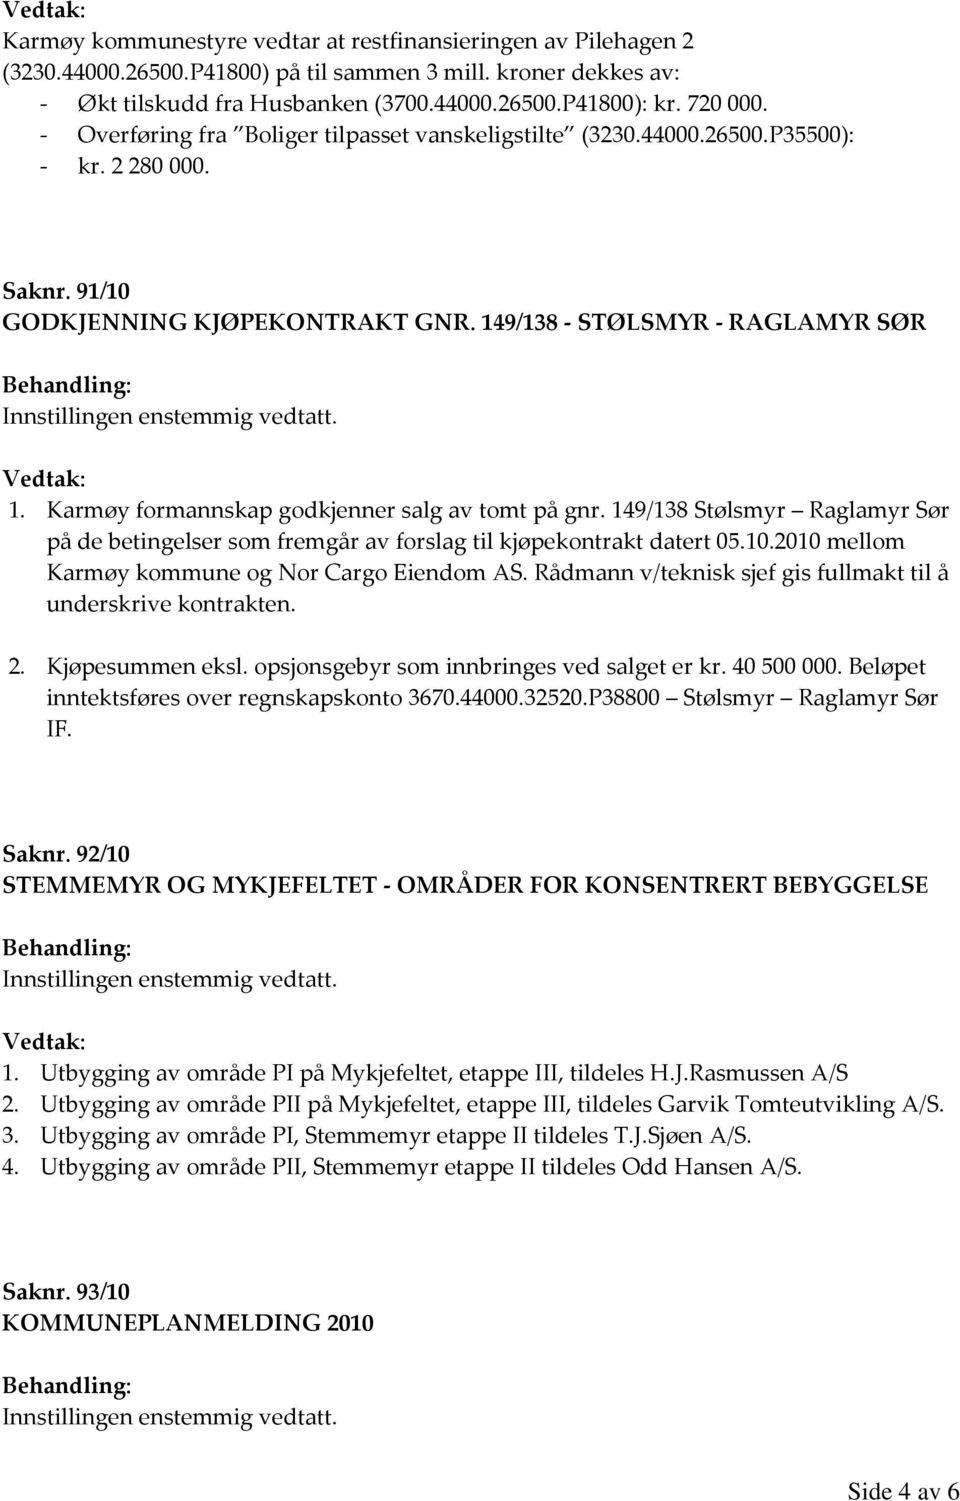 Karmøy formannskap godkjenner salg av tomt på gnr. 149/138 Stølsmyr Raglamyr Sør på de betingelser som fremgår av forslag til kjøpekontrakt datert 05.10.